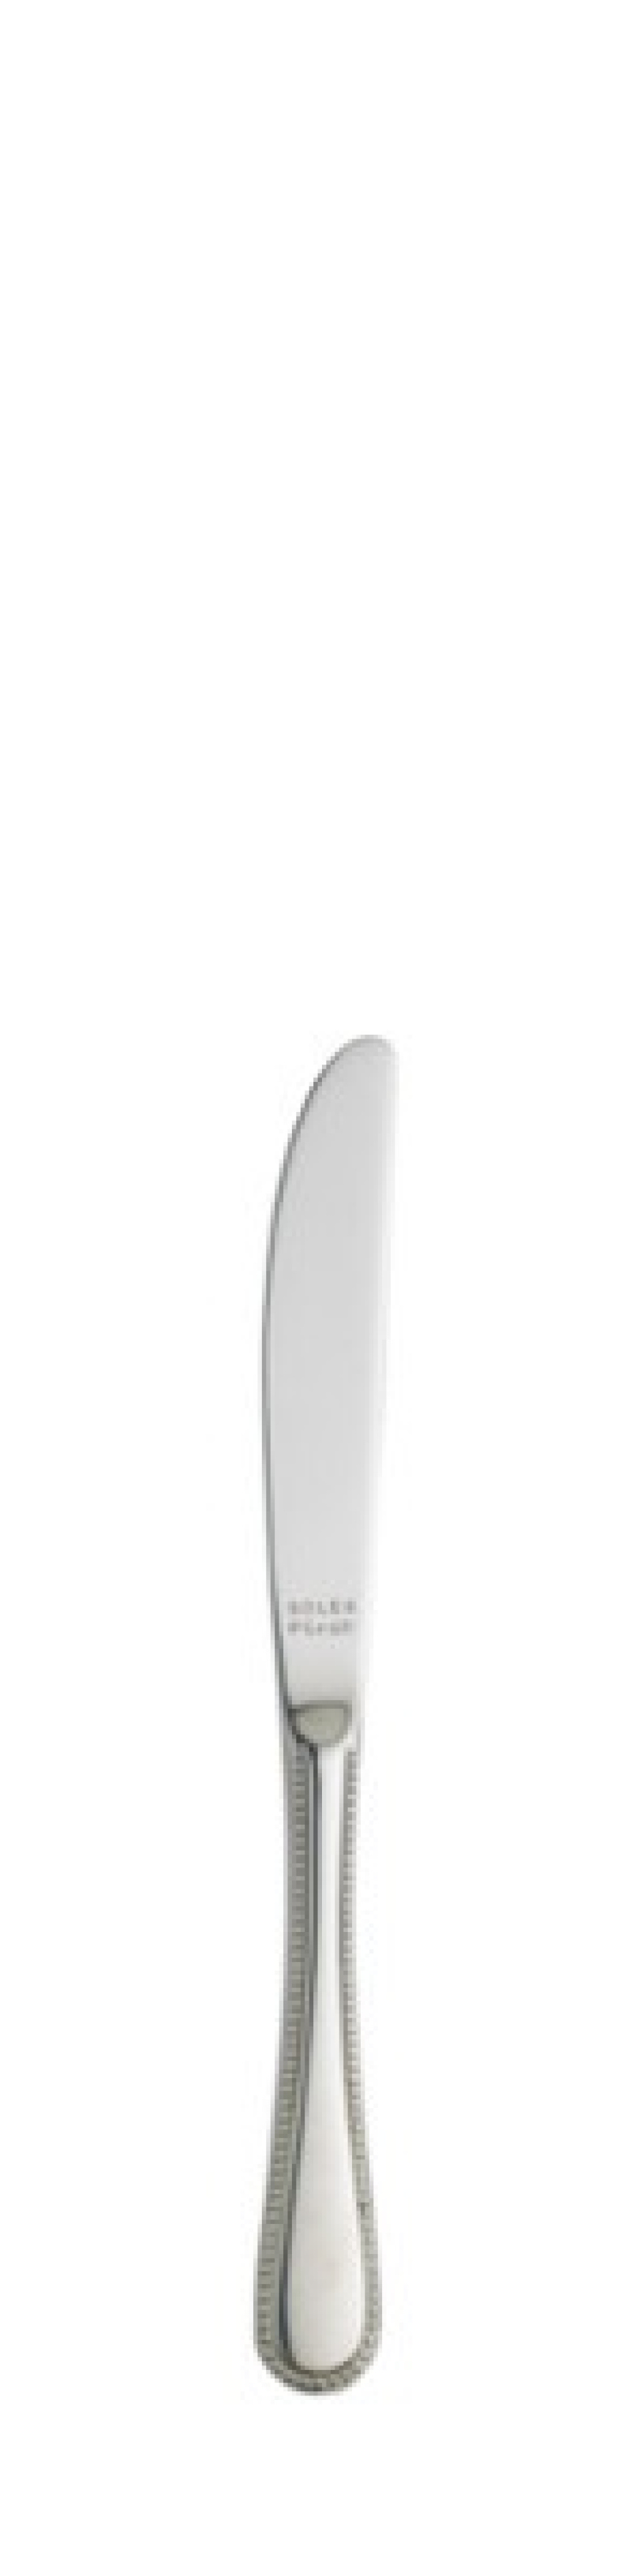 Perle Smørkniv 174 mm - Solex i gruppen Borddækning / Bestik / Smør knive hos The Kitchen Lab (1284-21424)